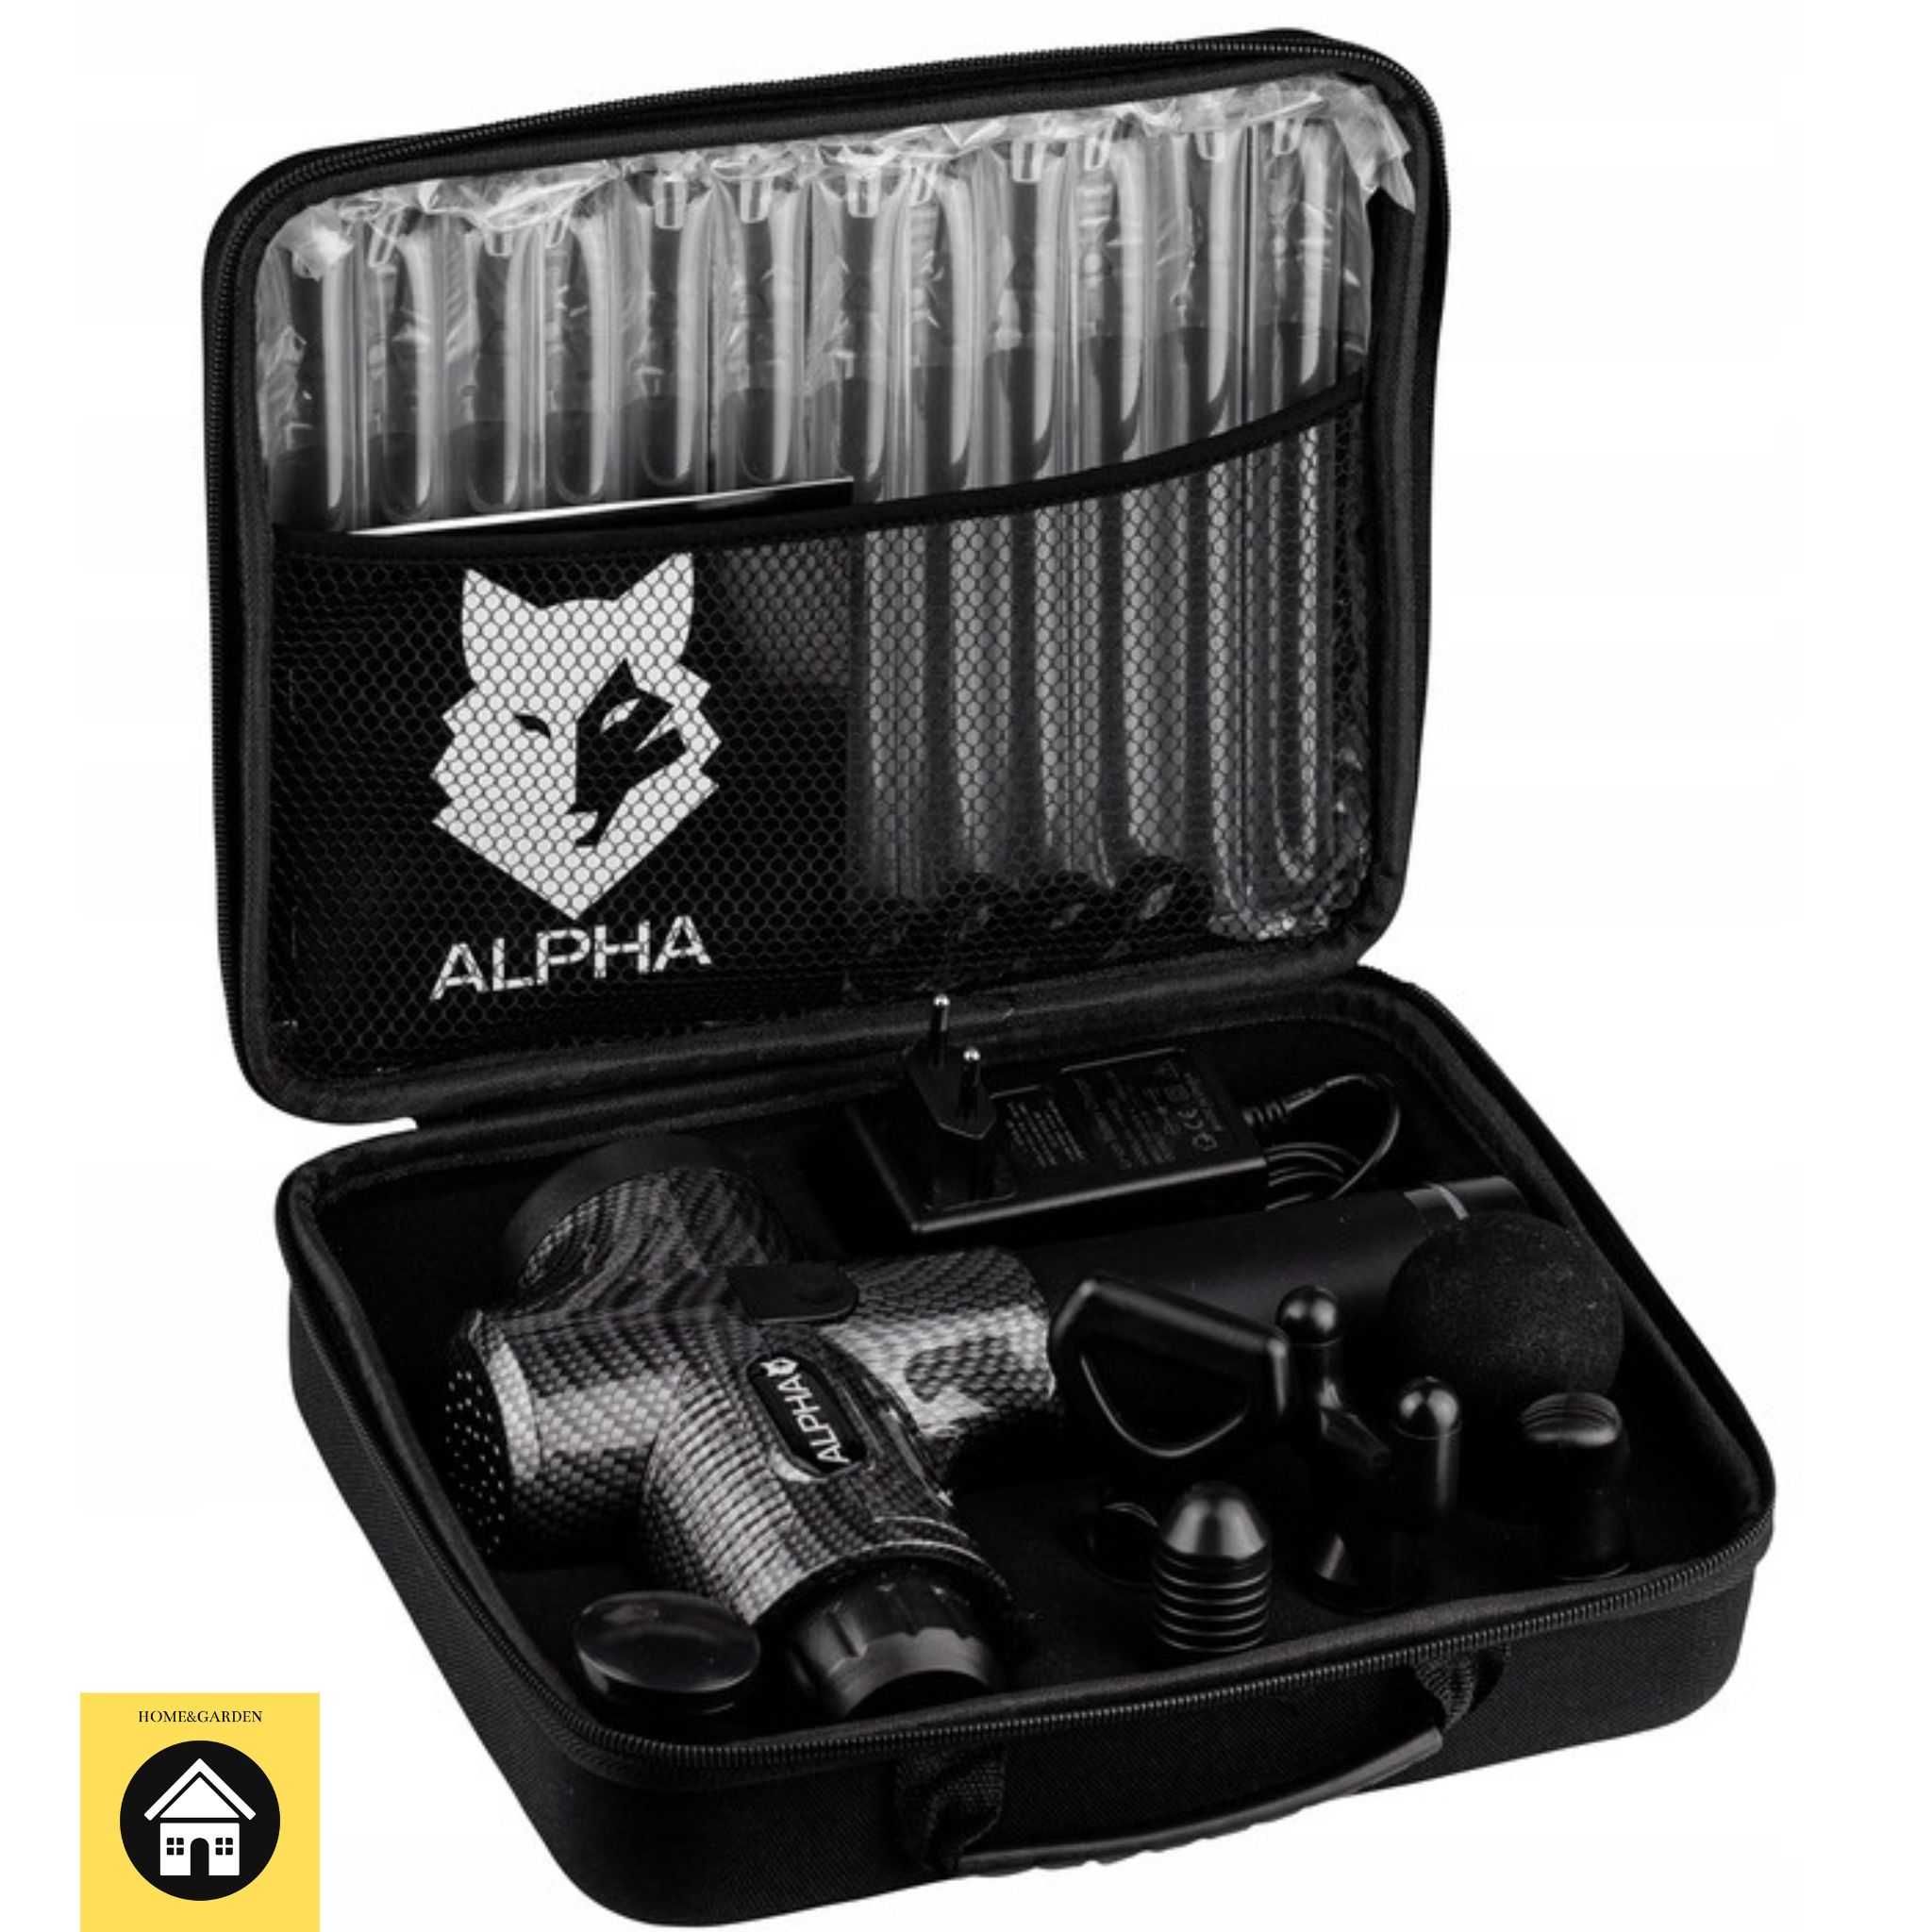 Pistolet do masażu AMG 01 Alpha Masażer 8 głowic + Walizka